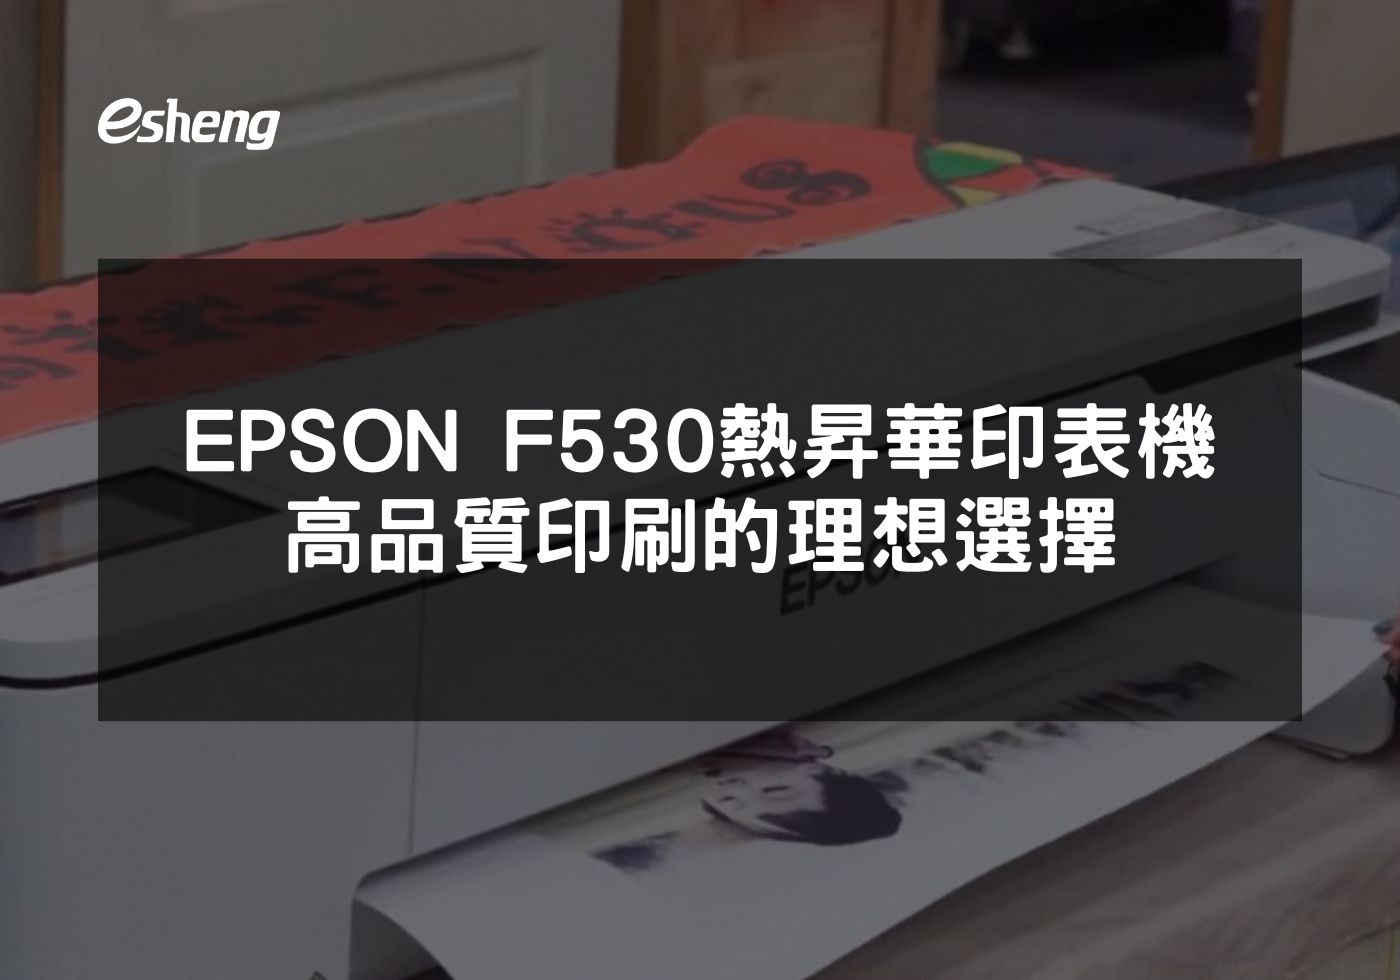 閱讀更多文章 EPSON F530 熱昇華印表機 高品質印刷的理想選擇